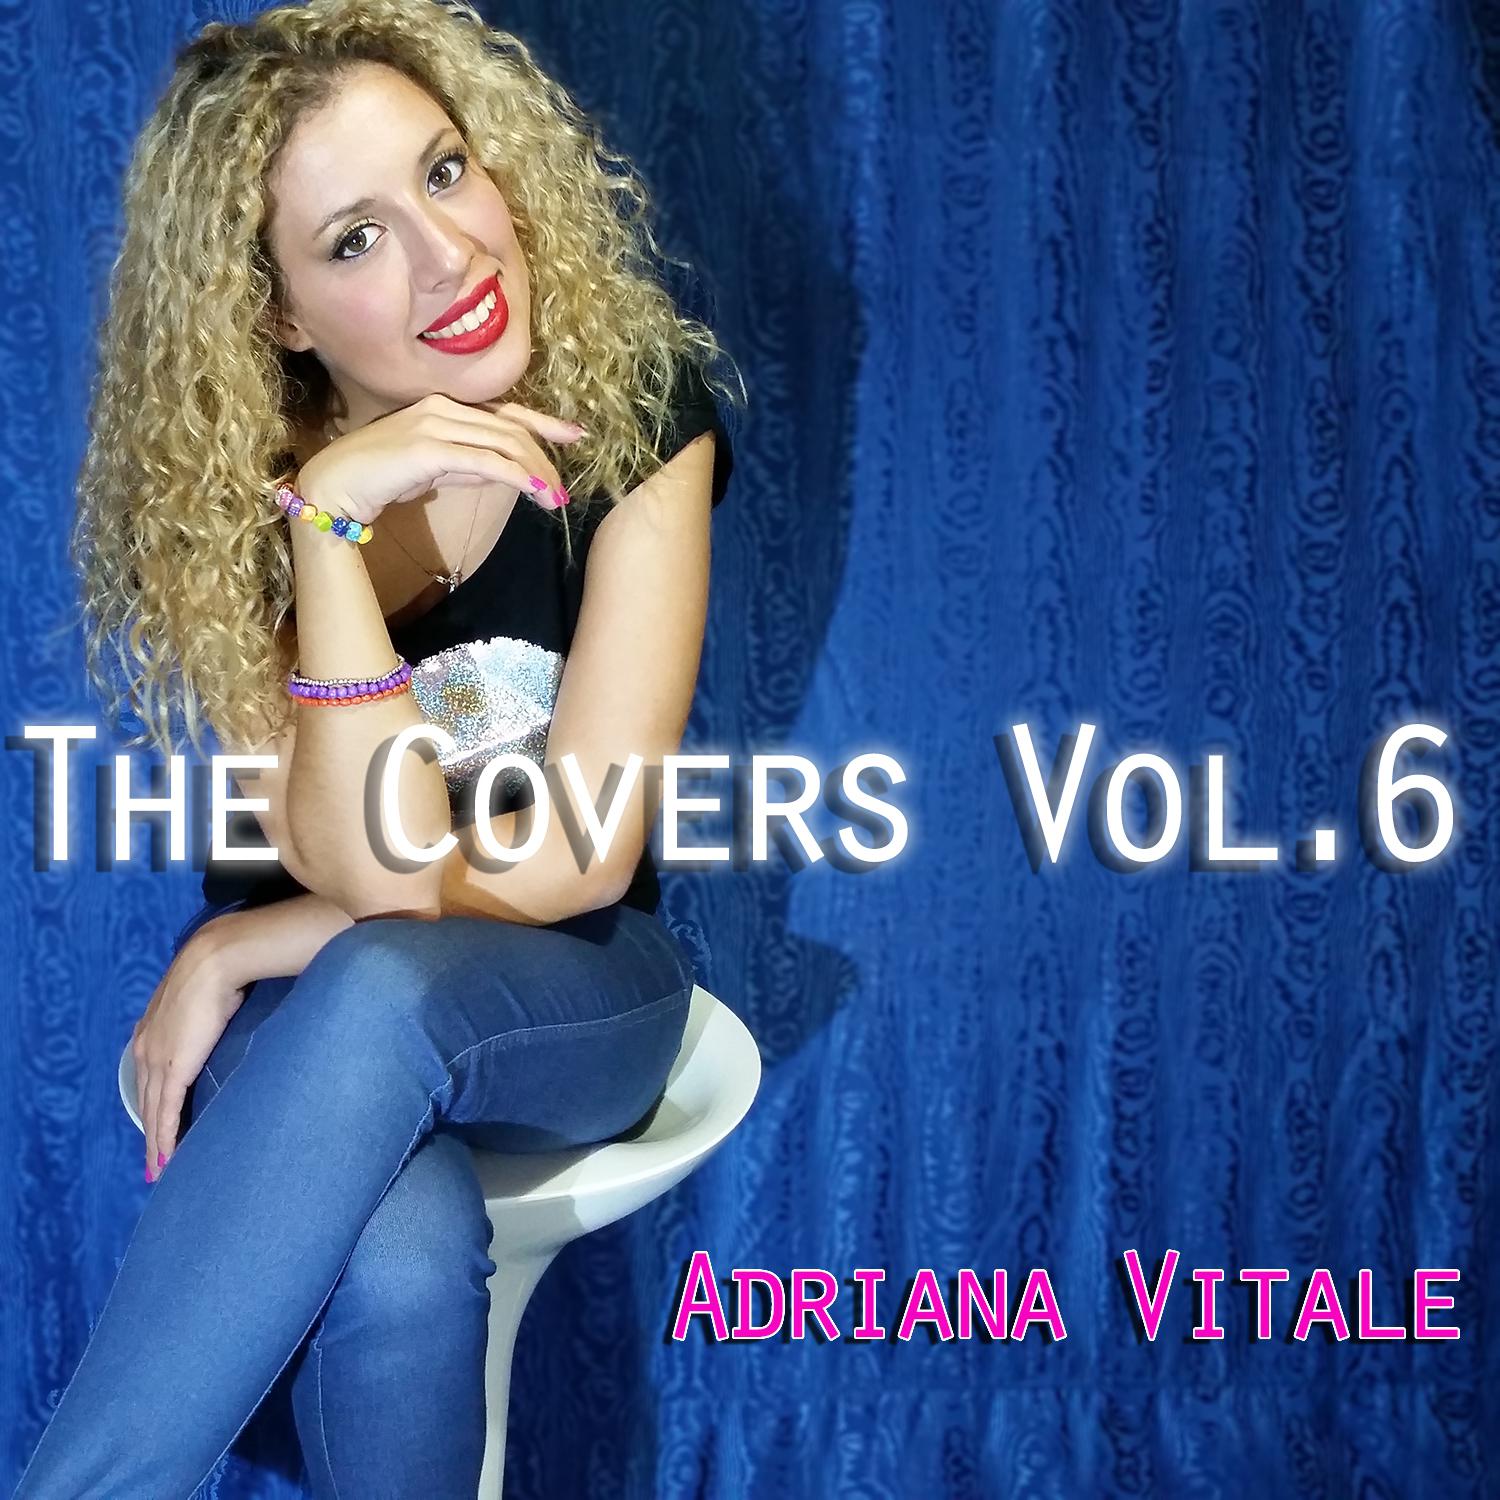 Adriana Vitale - Wild (Originally by Jessie J)